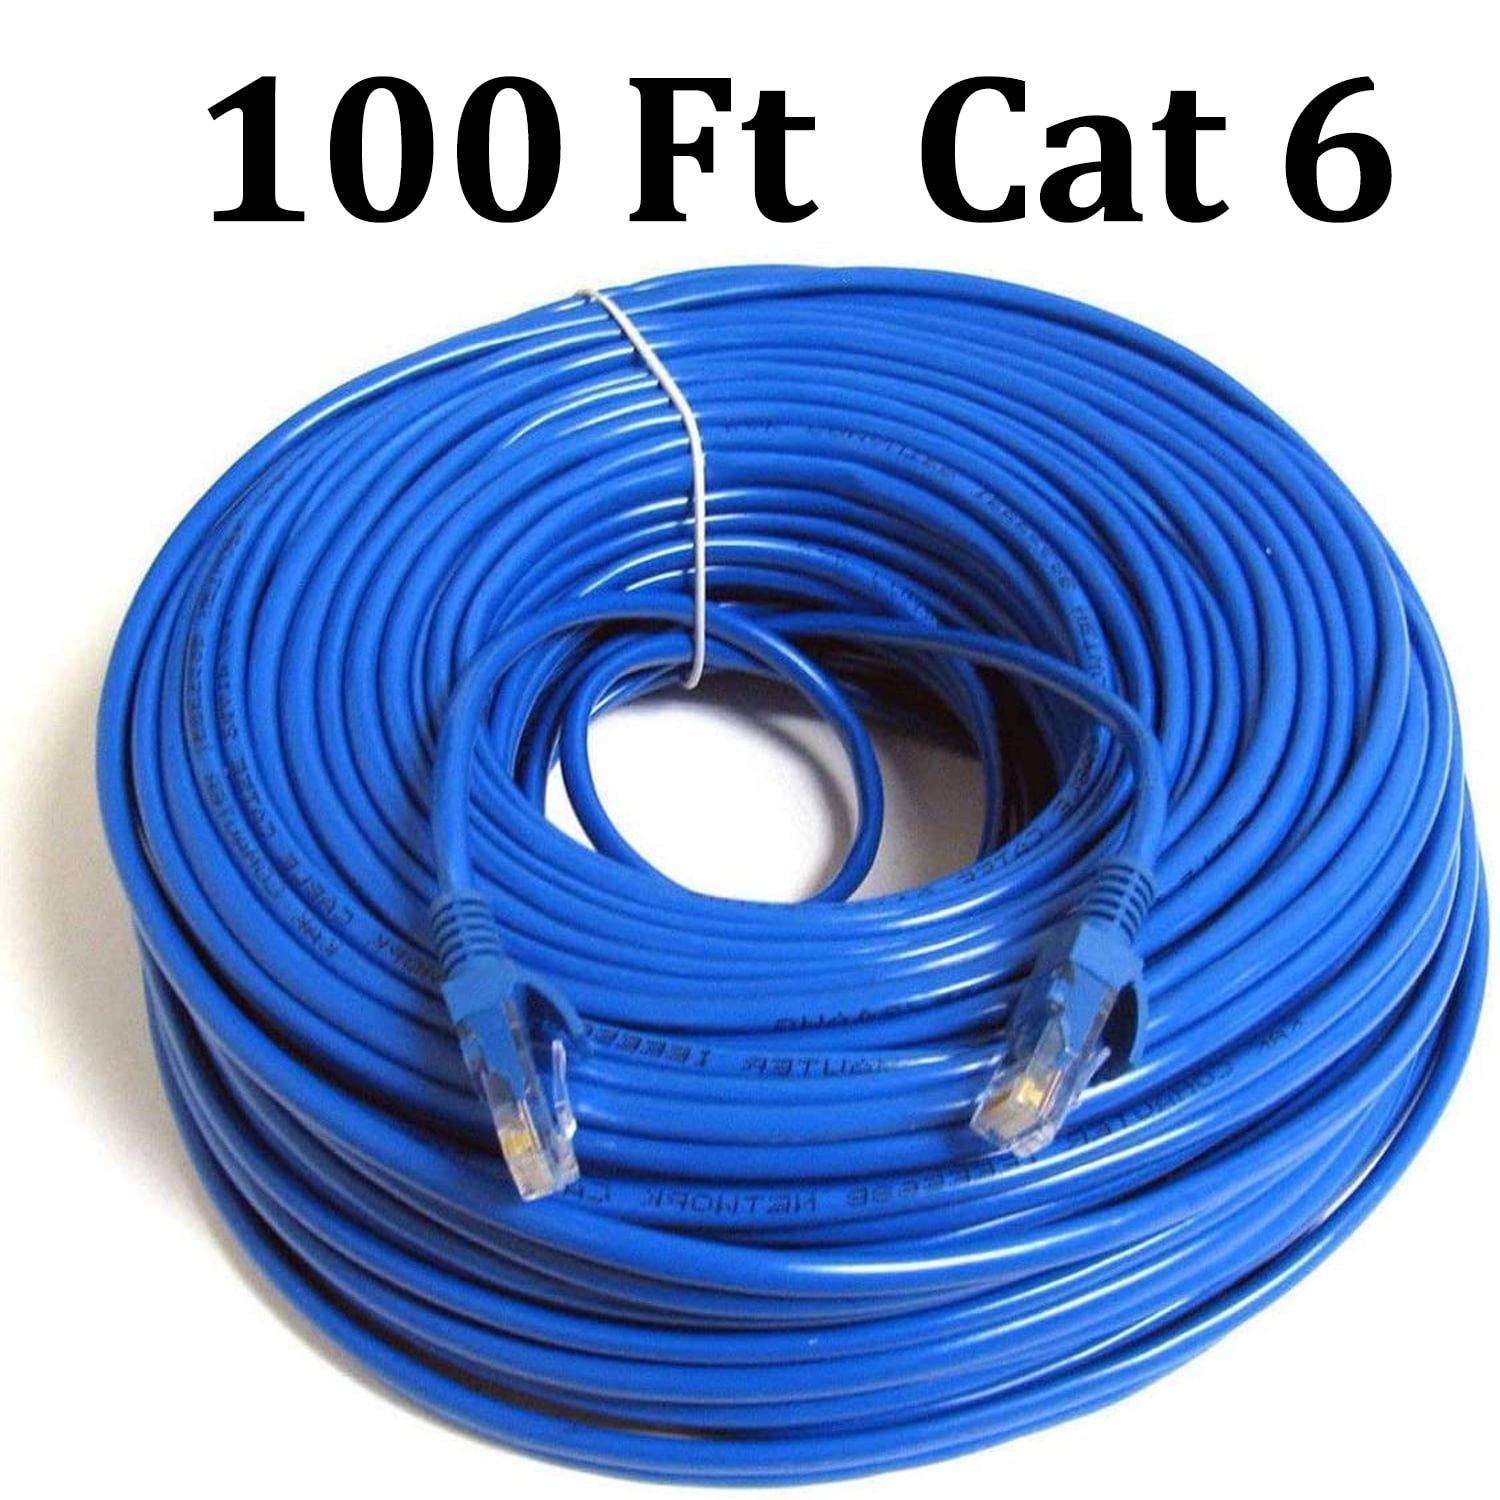 70m Black External Outdoor Network Ethernet Cable Cat5e 100% Copper RJ45